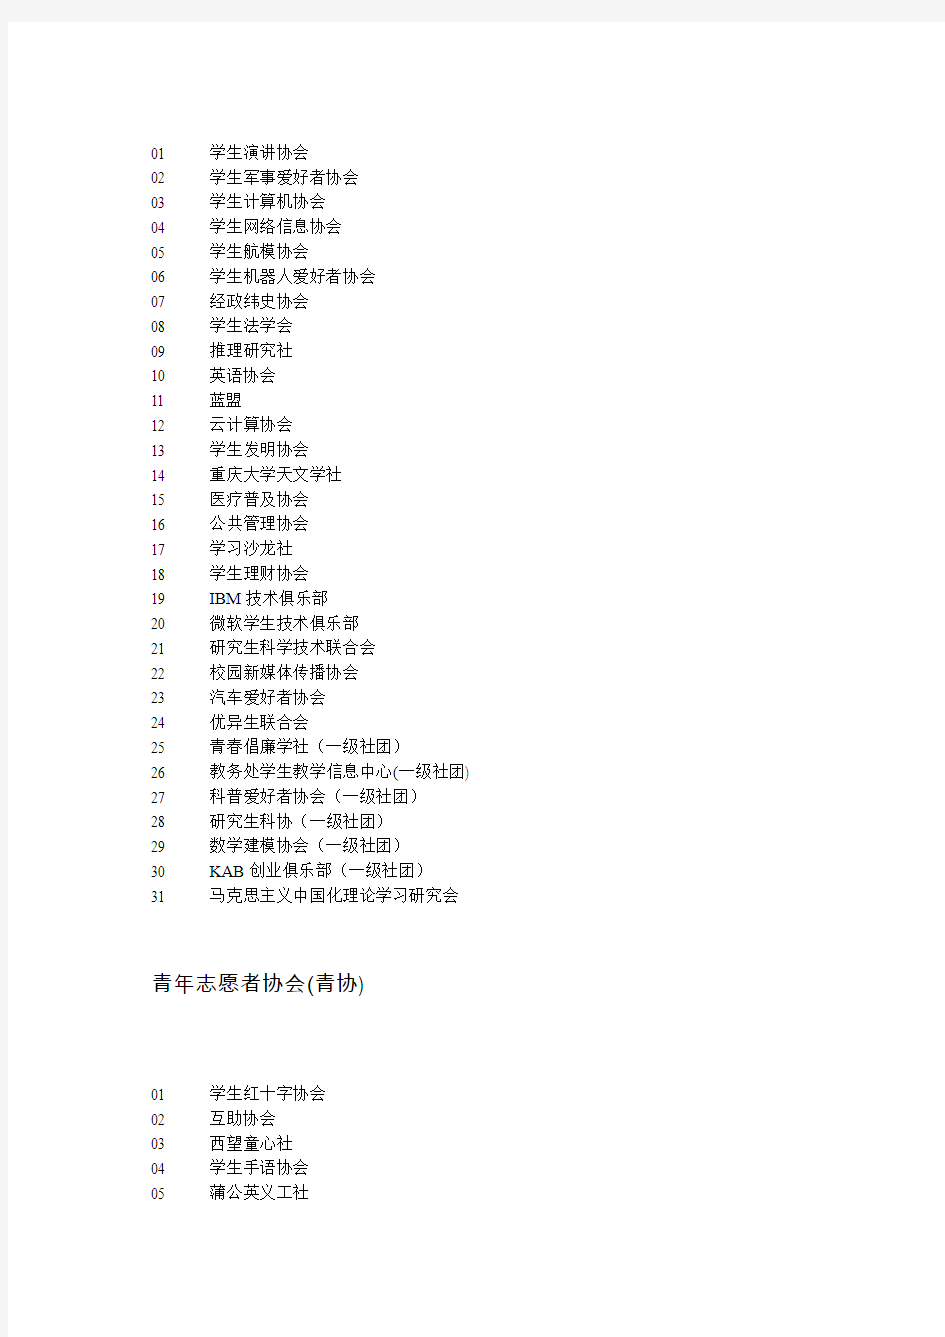 重庆大学社团名单